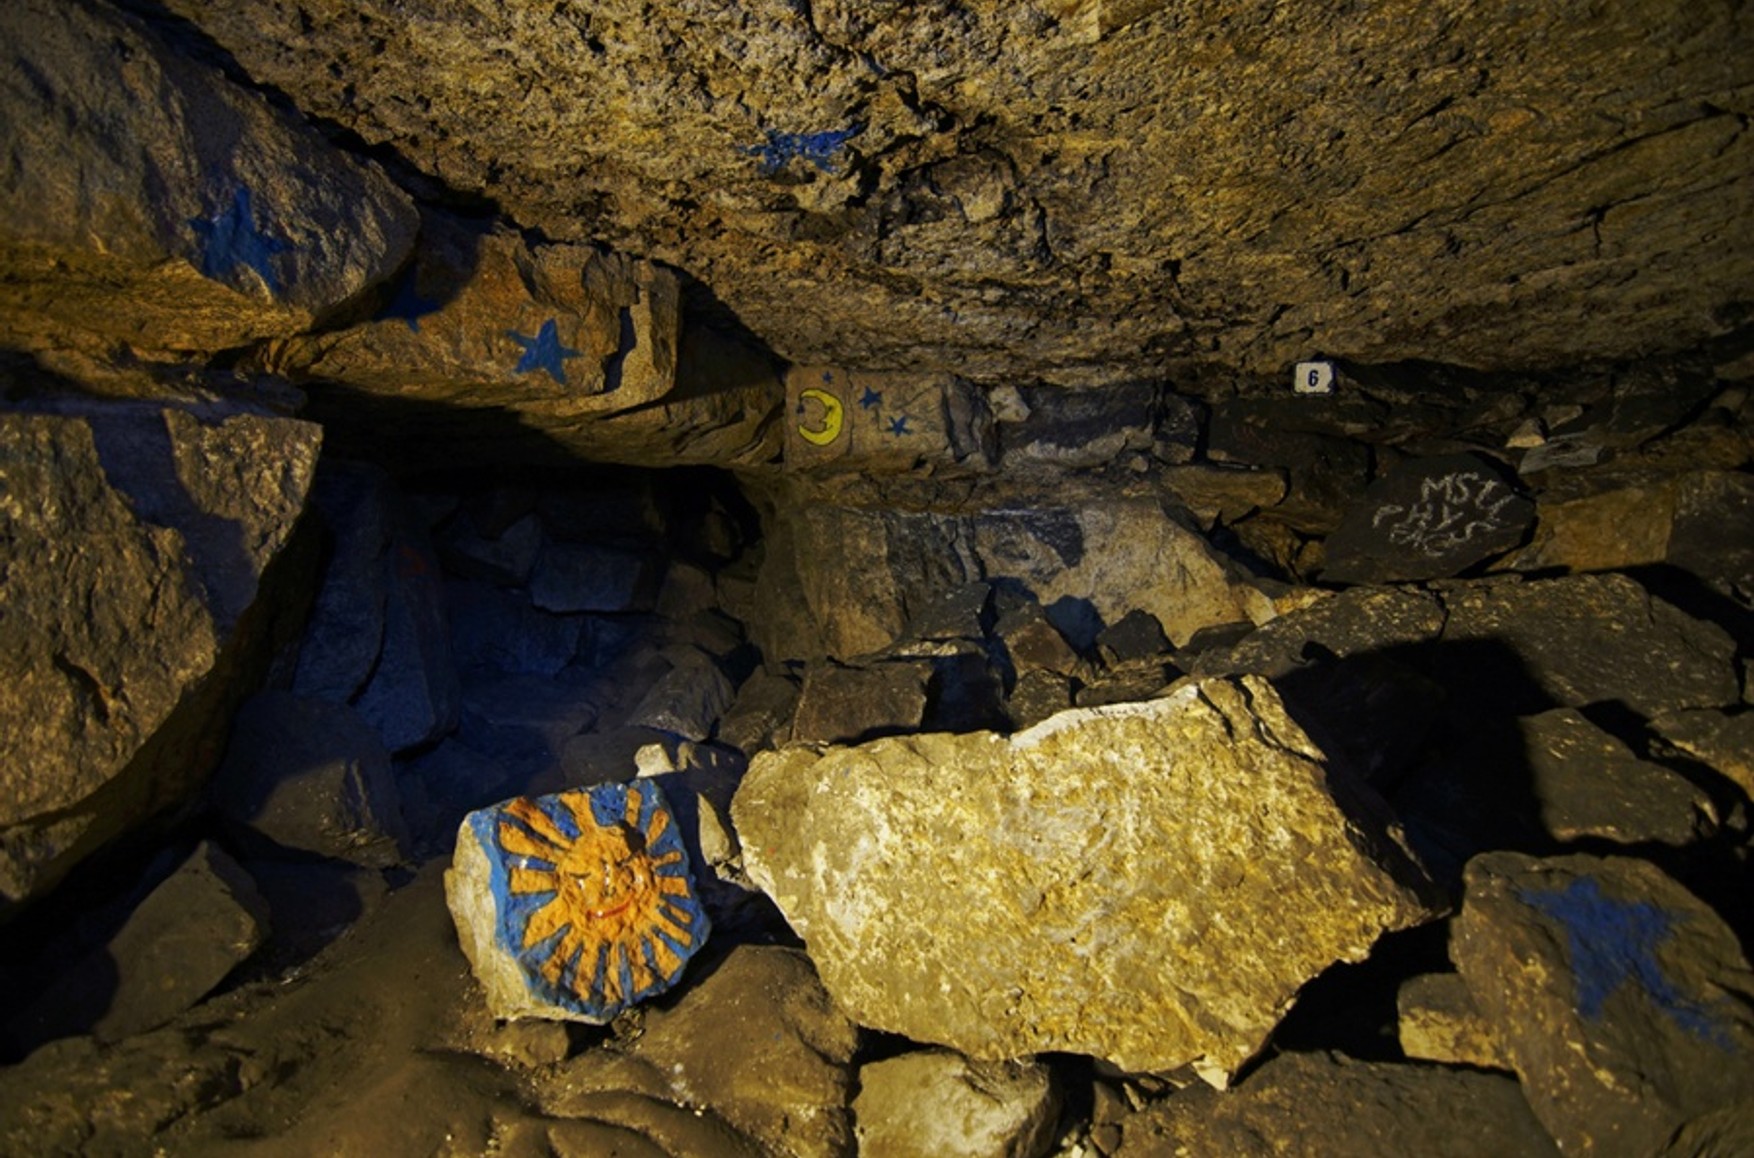 У Підмосков'ї знайшли дітей, які заблукали в печерах Сьянов